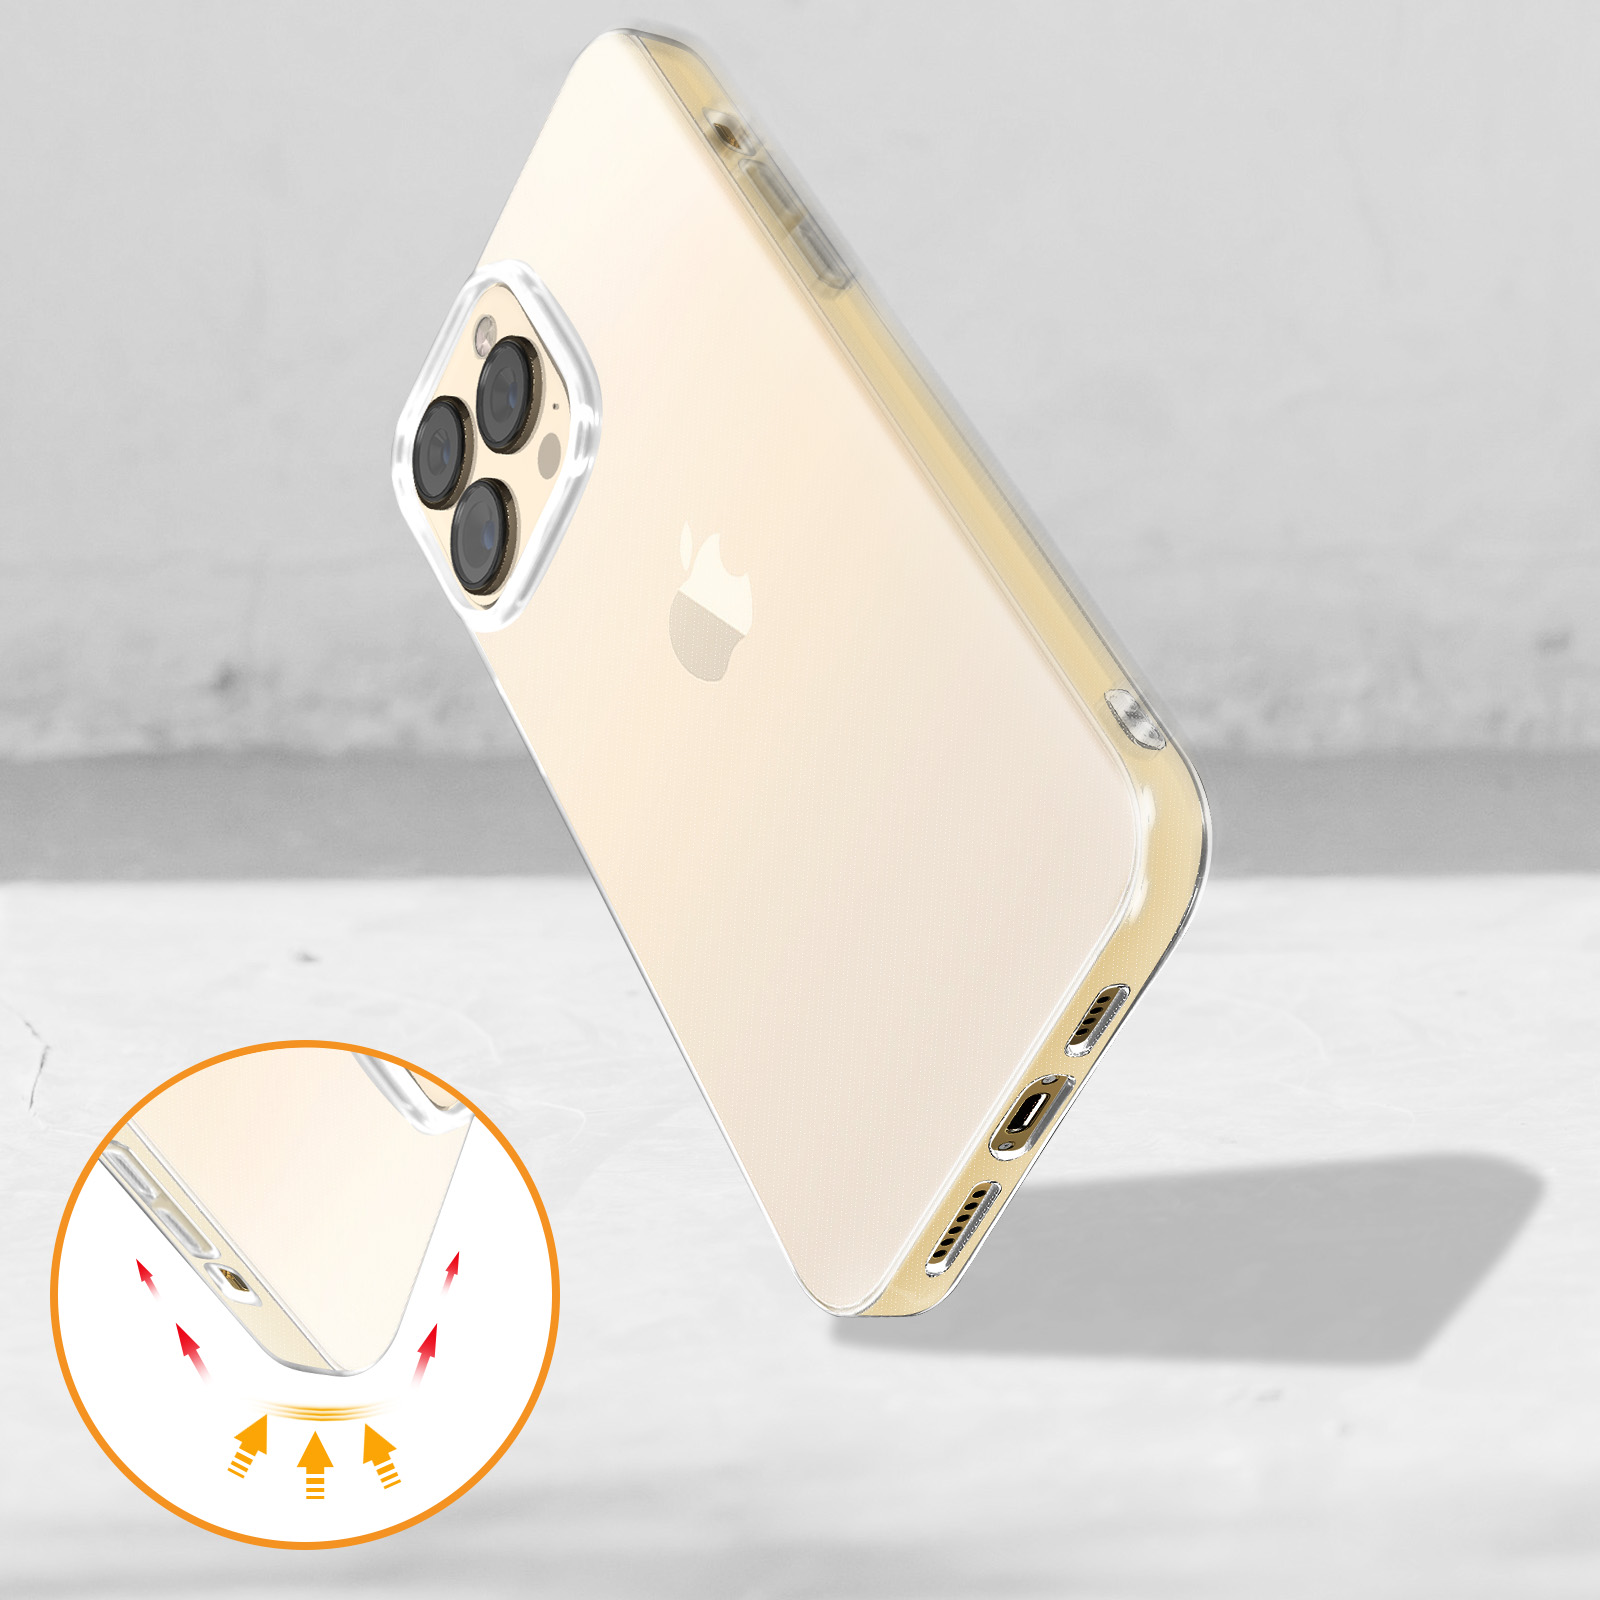 Coque iPhone 13 Pro Max Antichoc souple silicone transparente